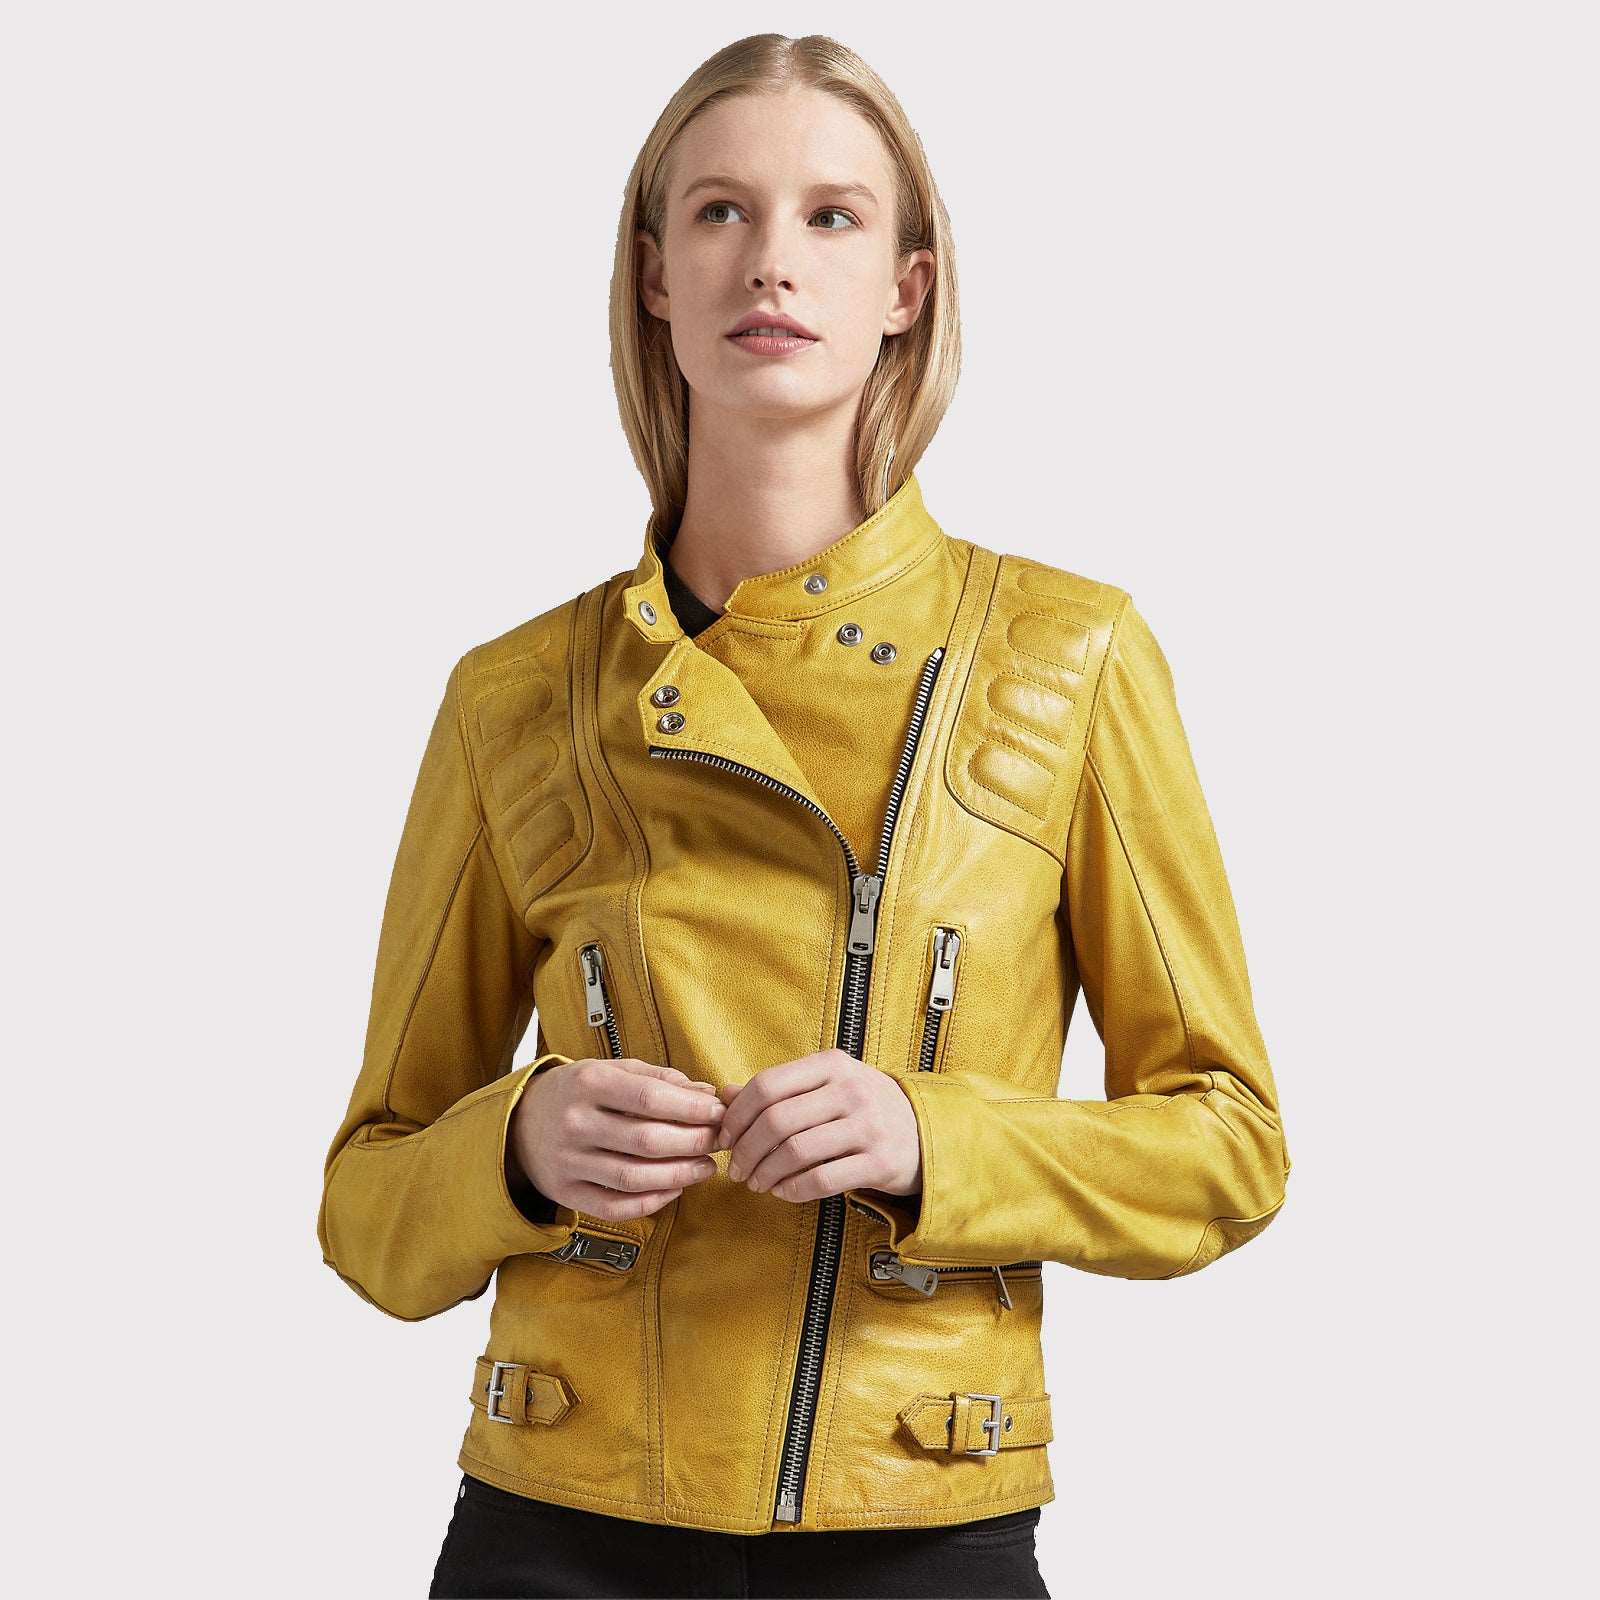 Stylish Women's Bright Yellow Leather Jacket - Biker Jacket